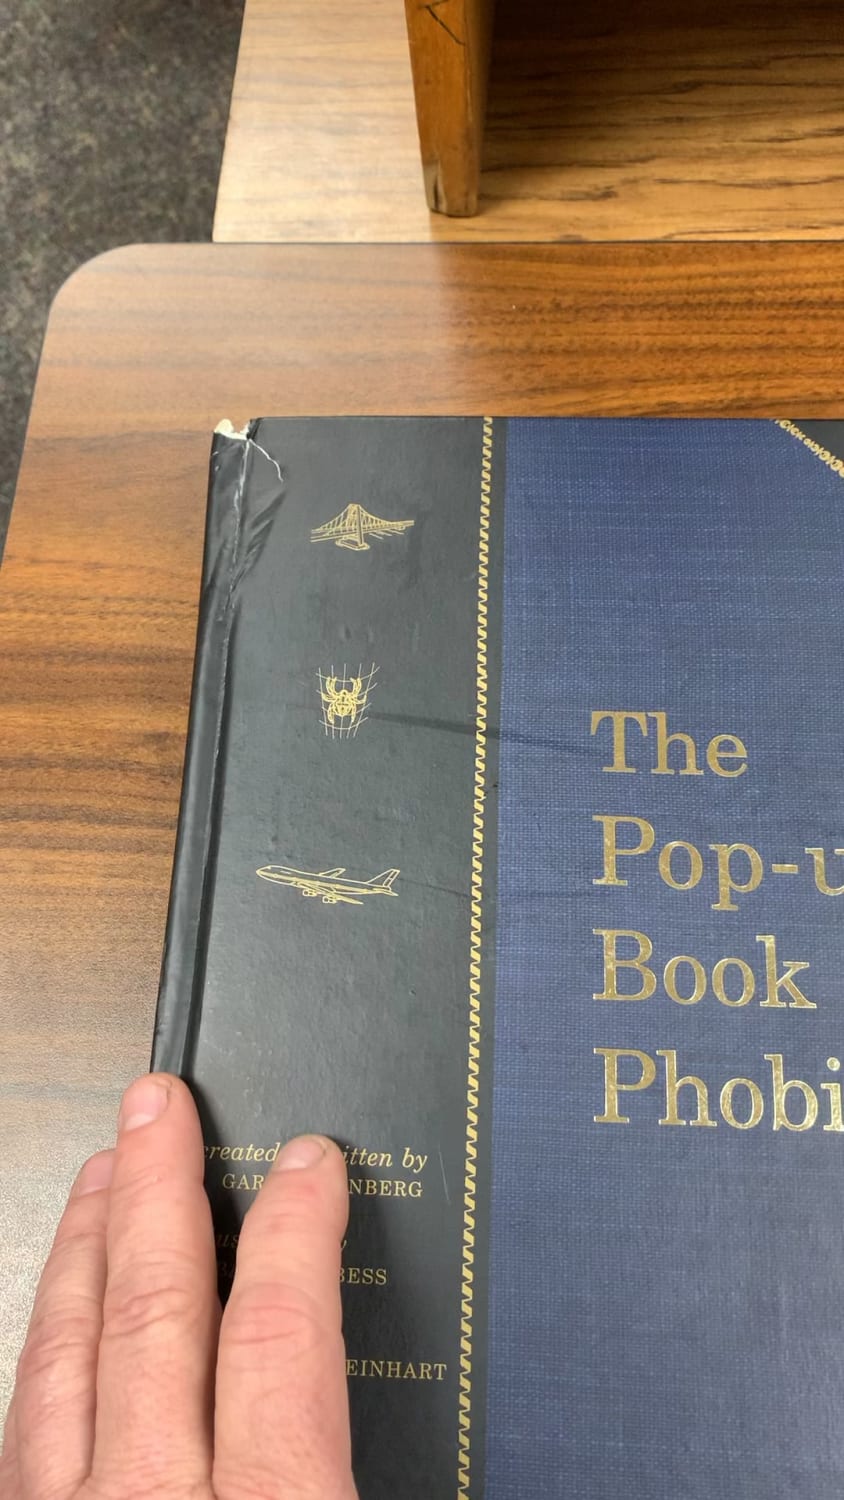 This book of phobias I found